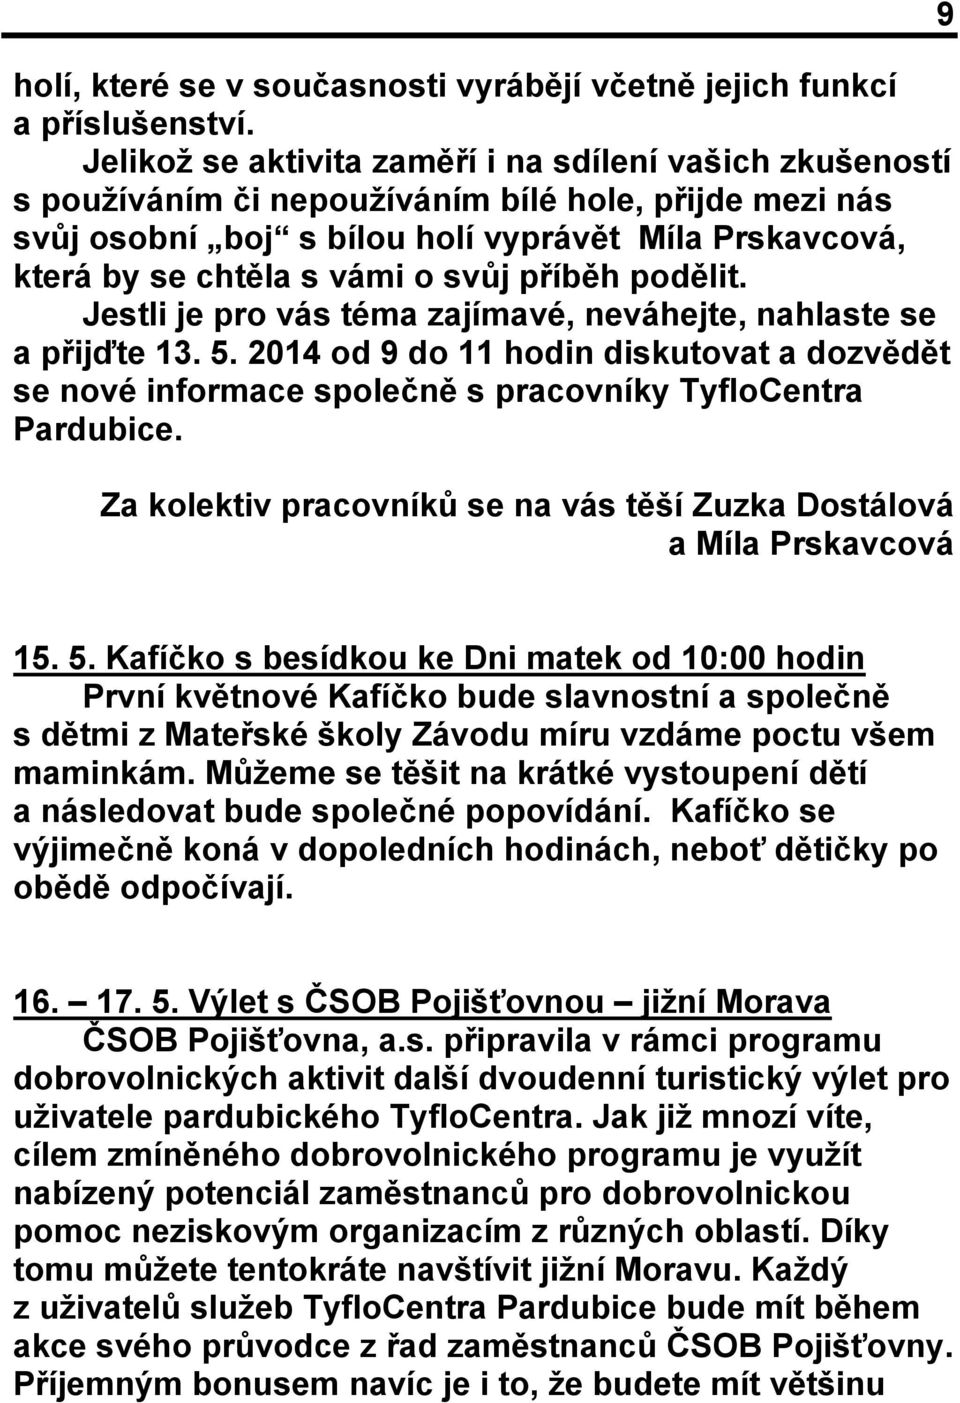 svůj příběh podělit. Jestli je pro vás téma zajímavé, neváhejte, nahlaste se a přijďte 13. 5. 2014 od 9 do 11 hodin diskutovat a dozvědět se nové informace společně s pracovníky TyfloCentra Pardubice.